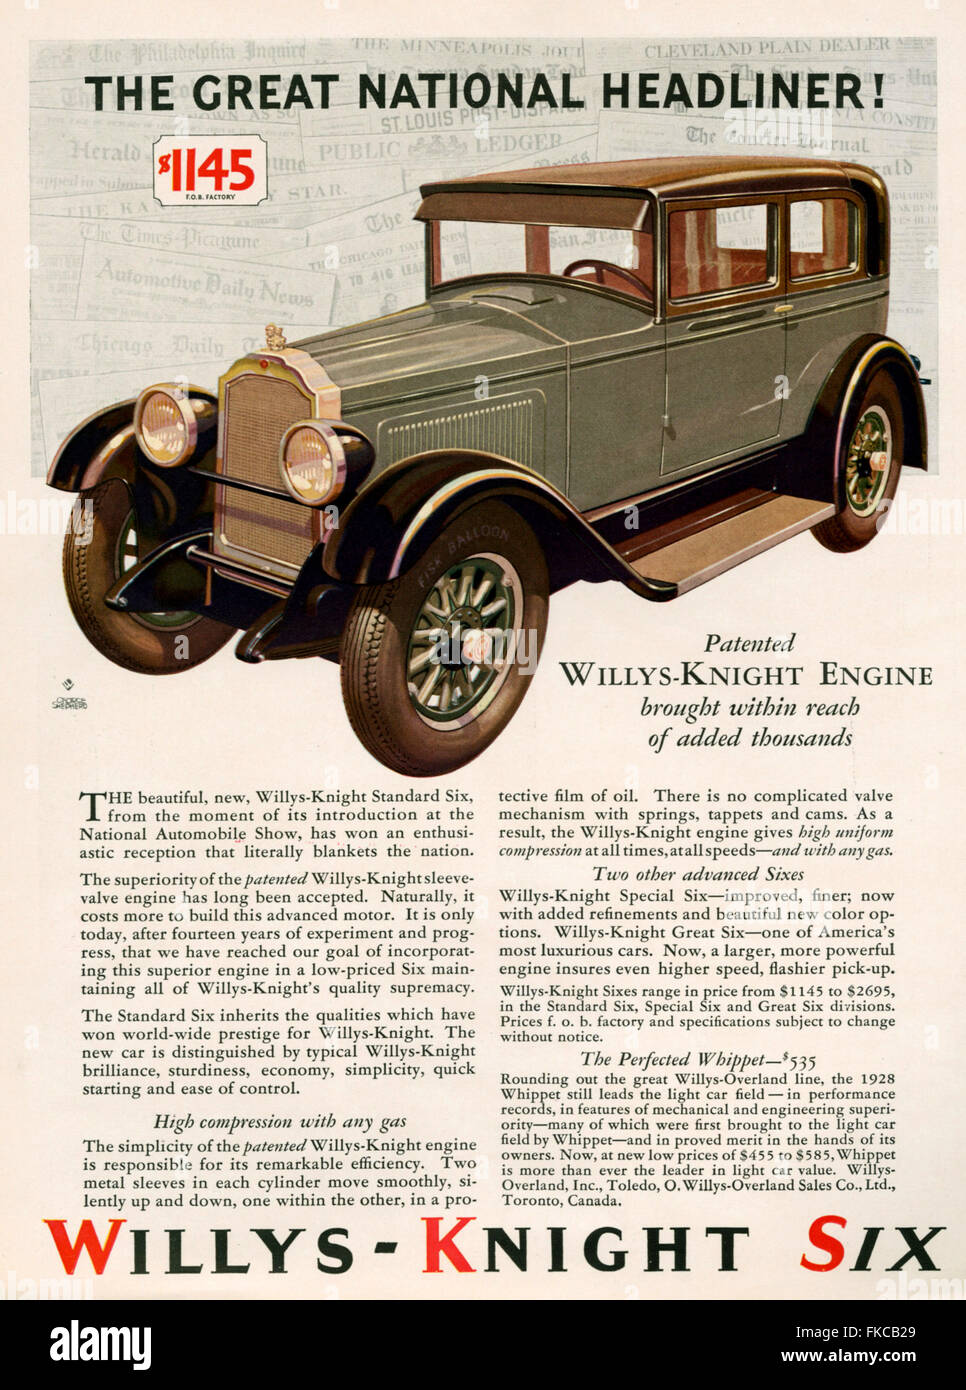 1920er Jahren USA Willys-Knight Magazin Anzeige Stockfoto